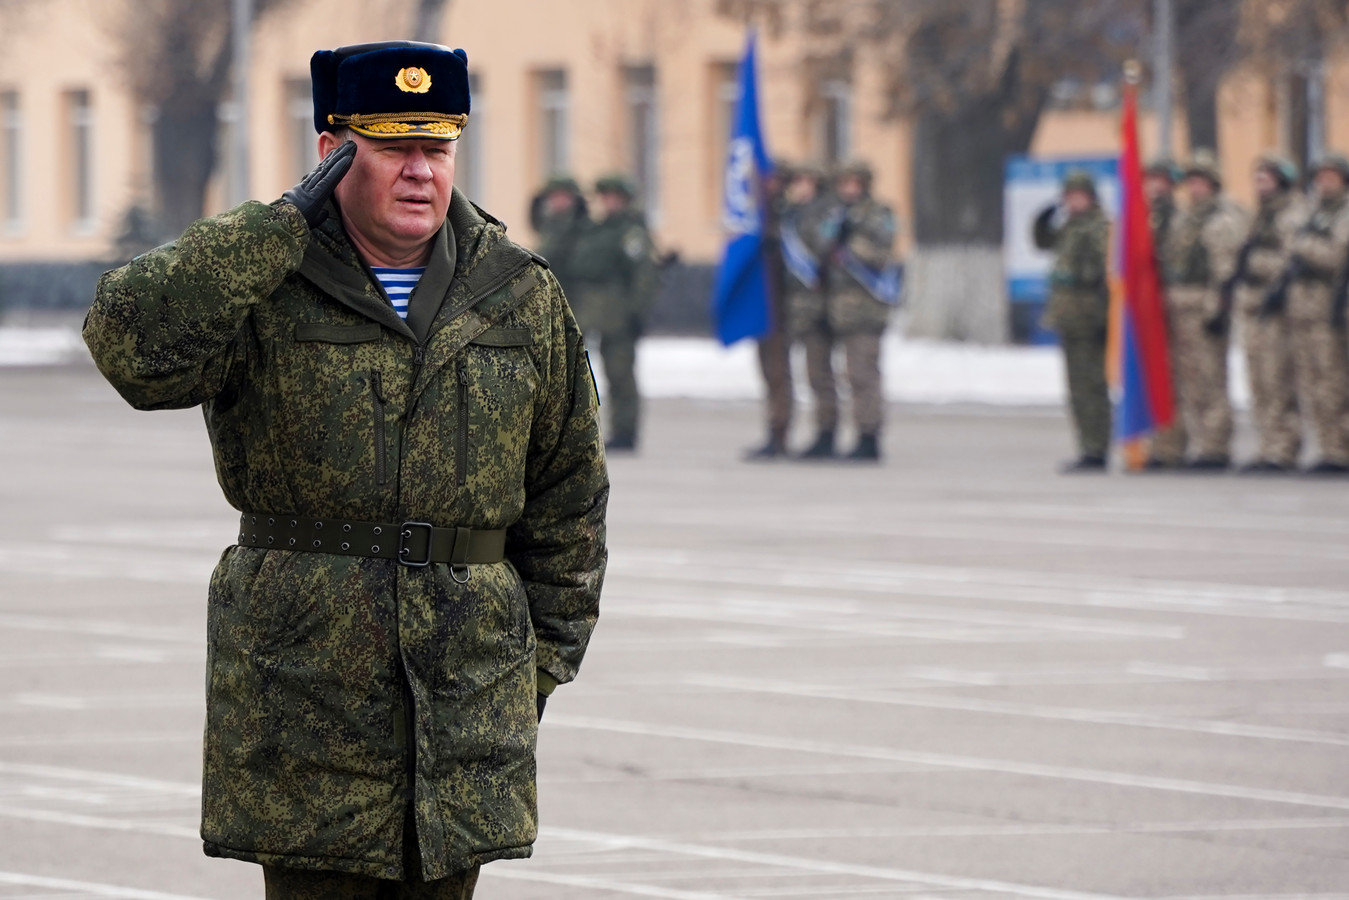 De Russische kolonel-generaal Andrei Serdyukov, bevelhebber van het militaire bondgenootschap CSTO, tijdens de officiële ceremonie die het begin van de terugtrekking van zijn troepen inluidt, donderdagochtend in Almaty.